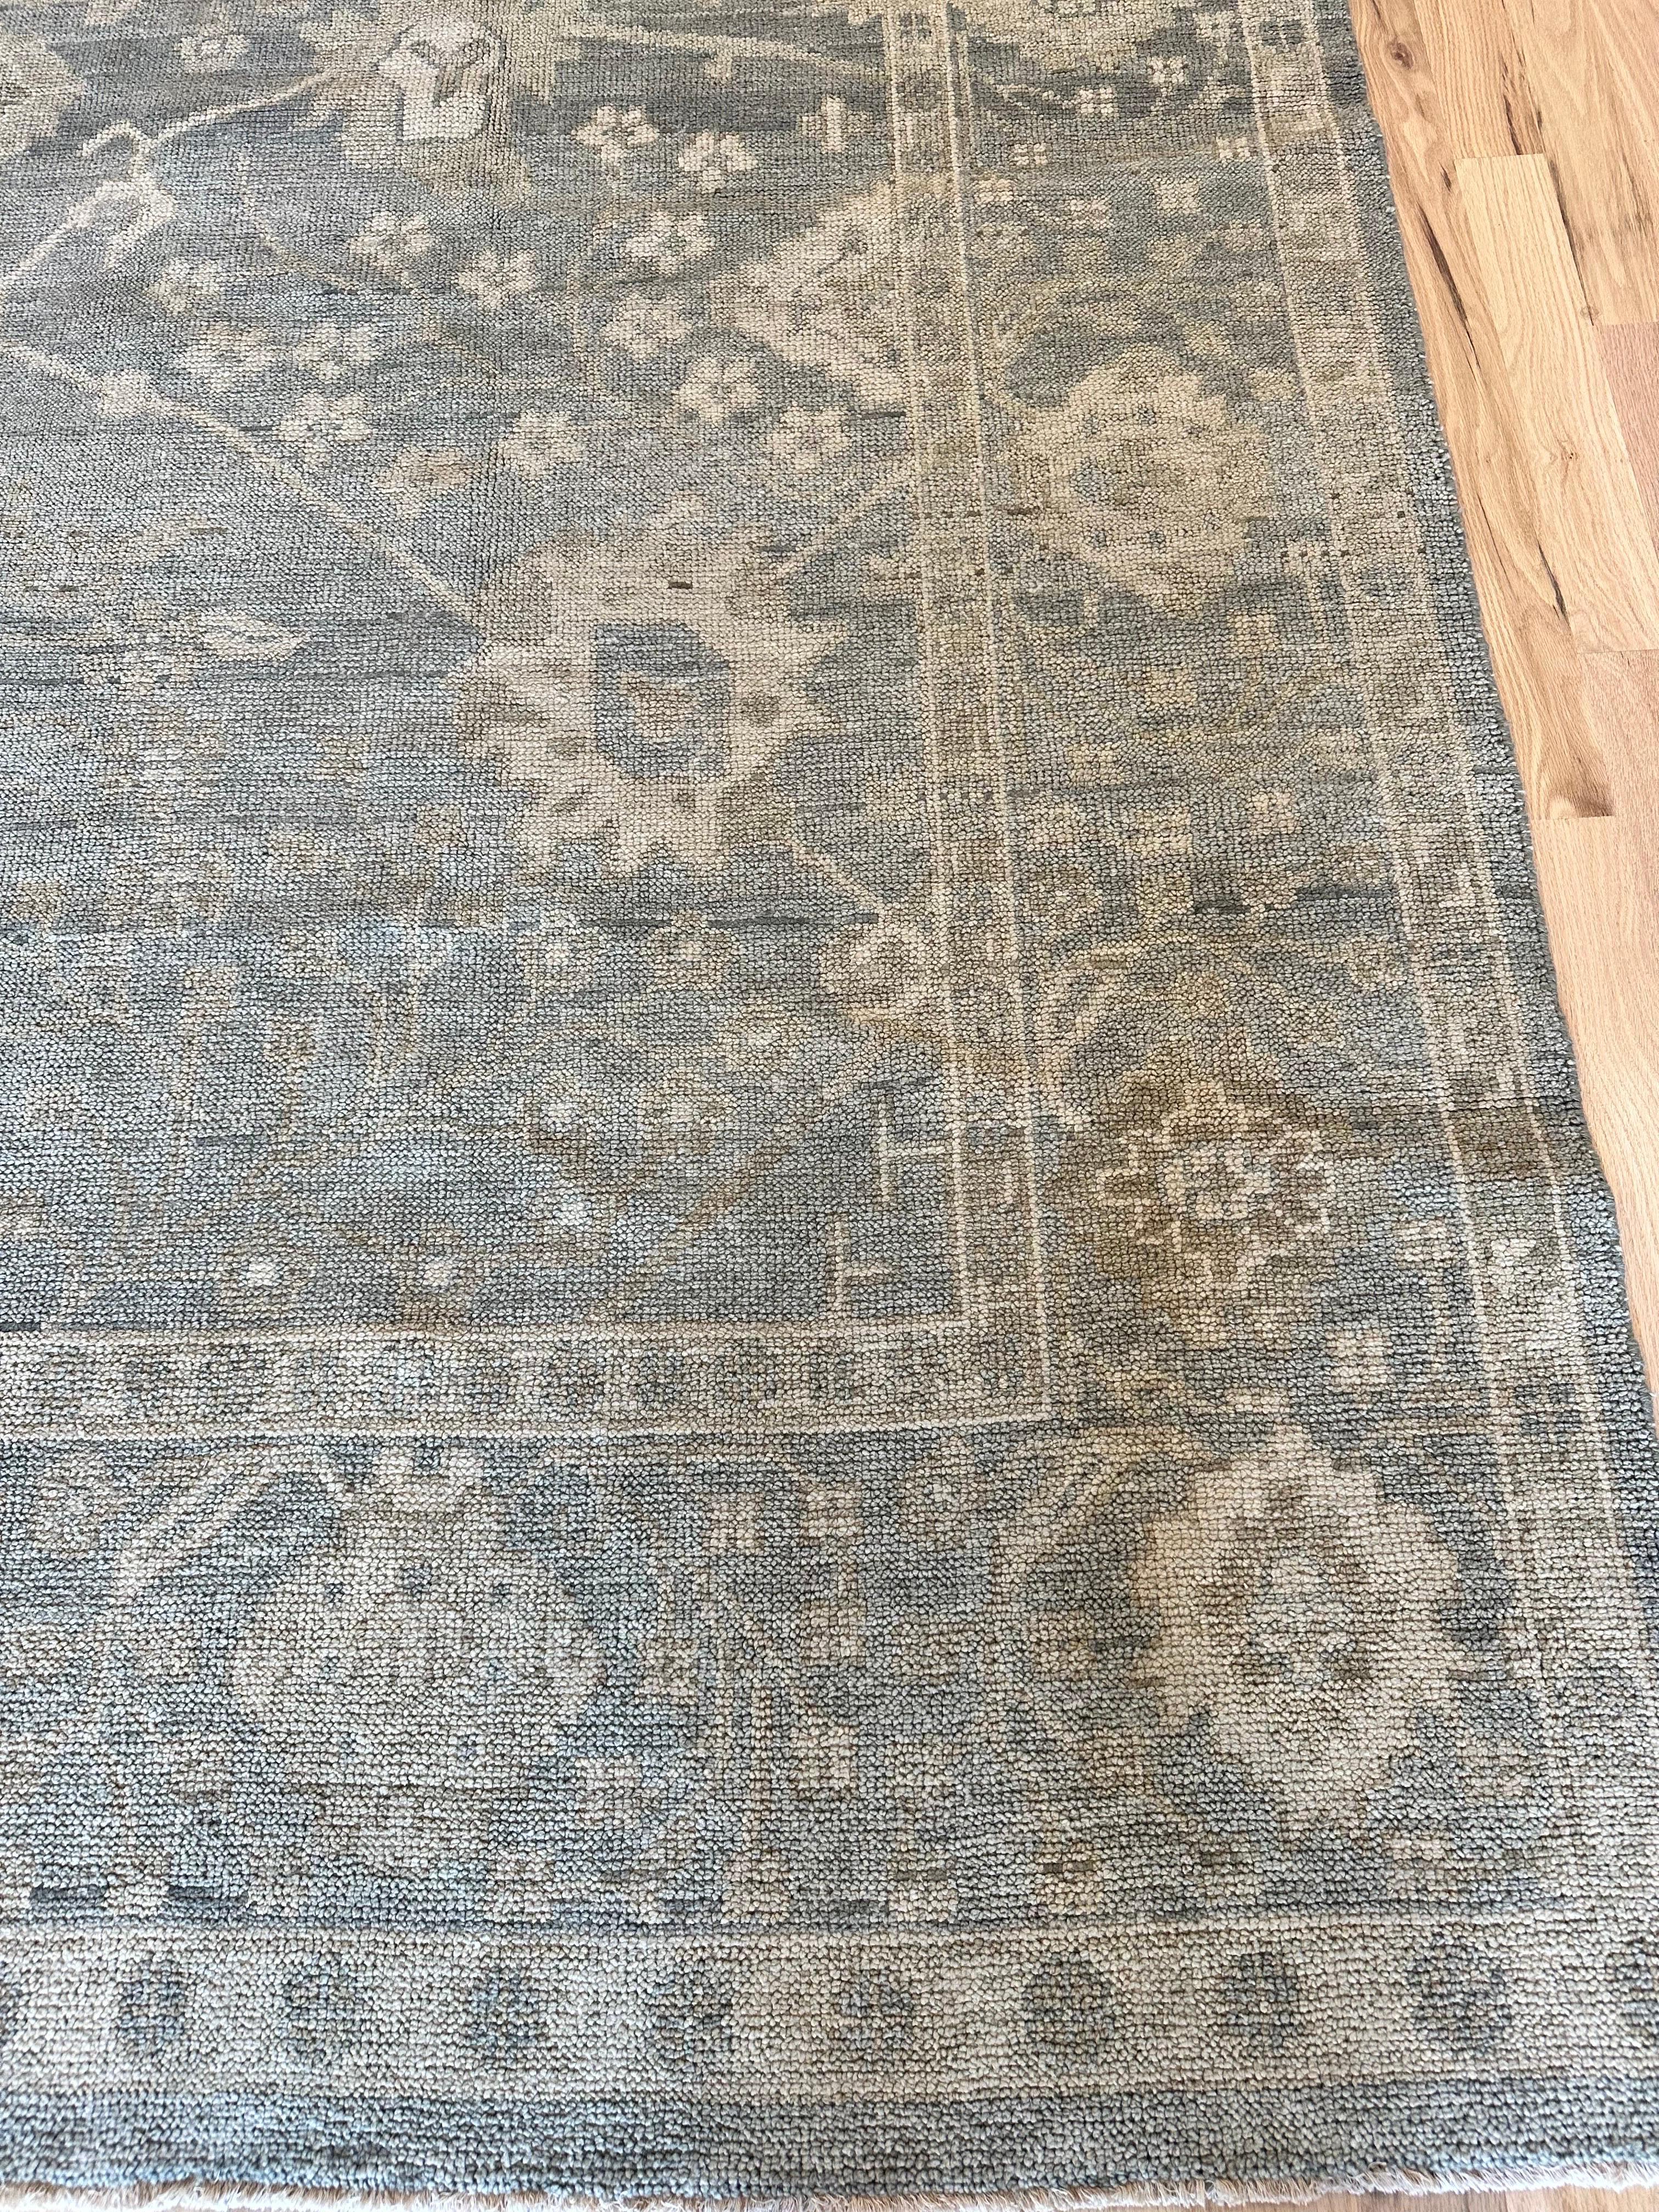 Vintage Oushak Carpet, Oriental Rug, Handmade Green Grey, Ivory, Saffron For Sale 6